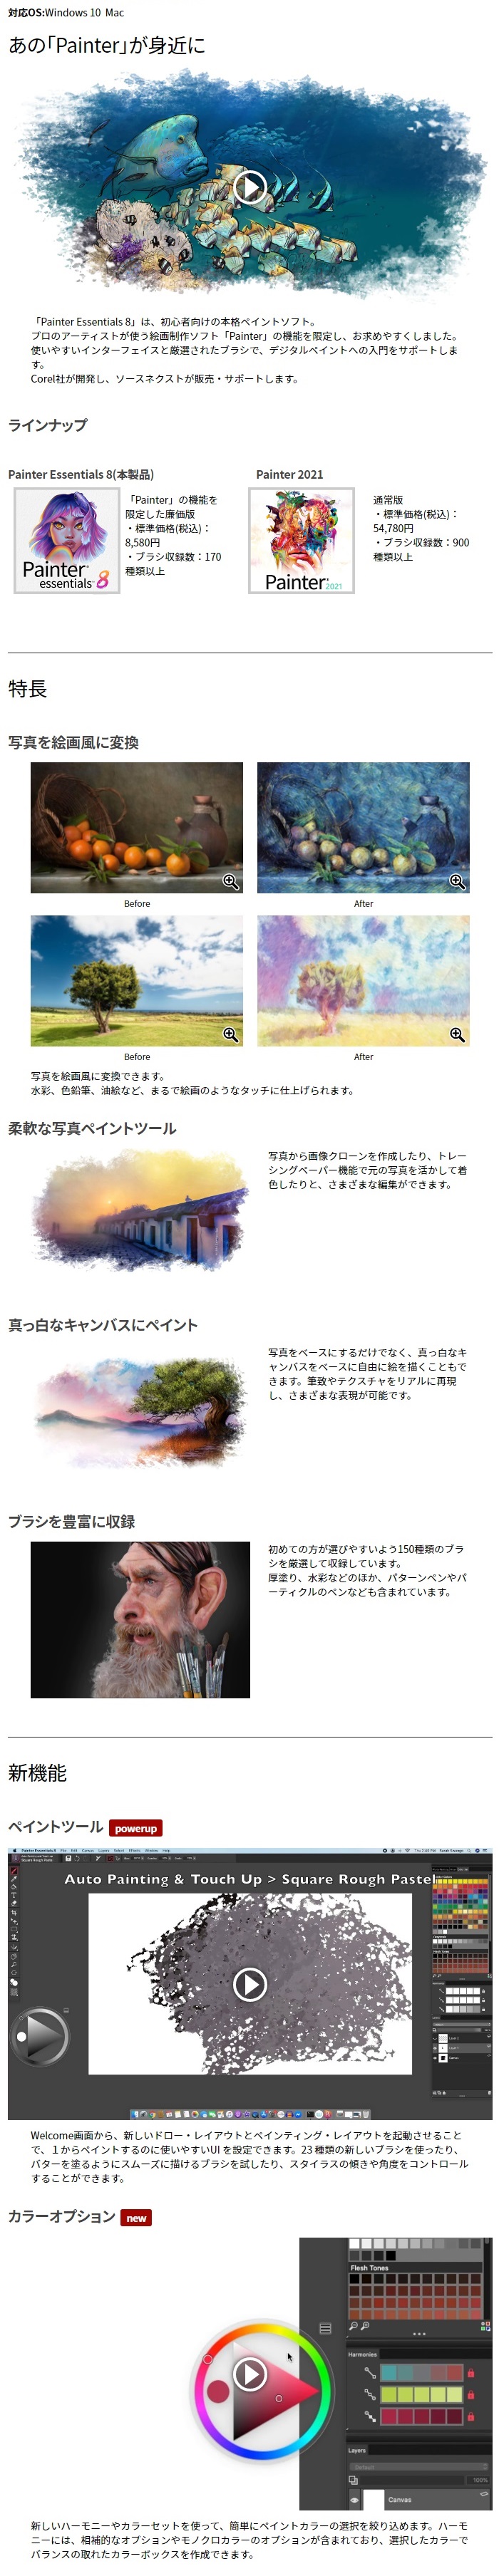 AMIダウンロード Painter Essentials ダウンロード版【ソースネクスト】